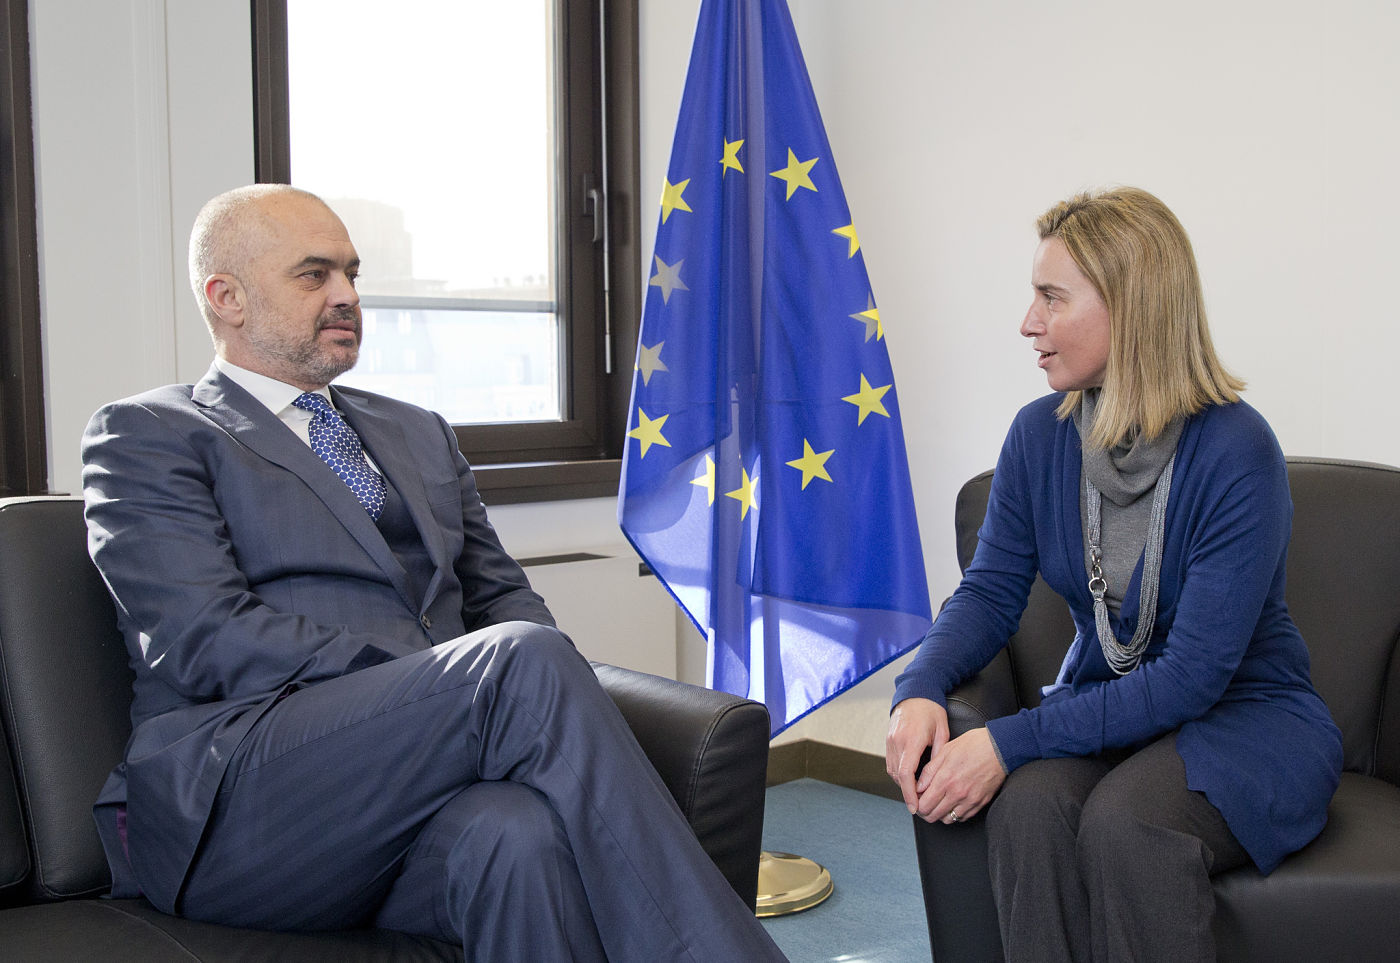 Edi Rama E Federica Mogherini Unione Europoea Commissione Europea Albania Macedonia